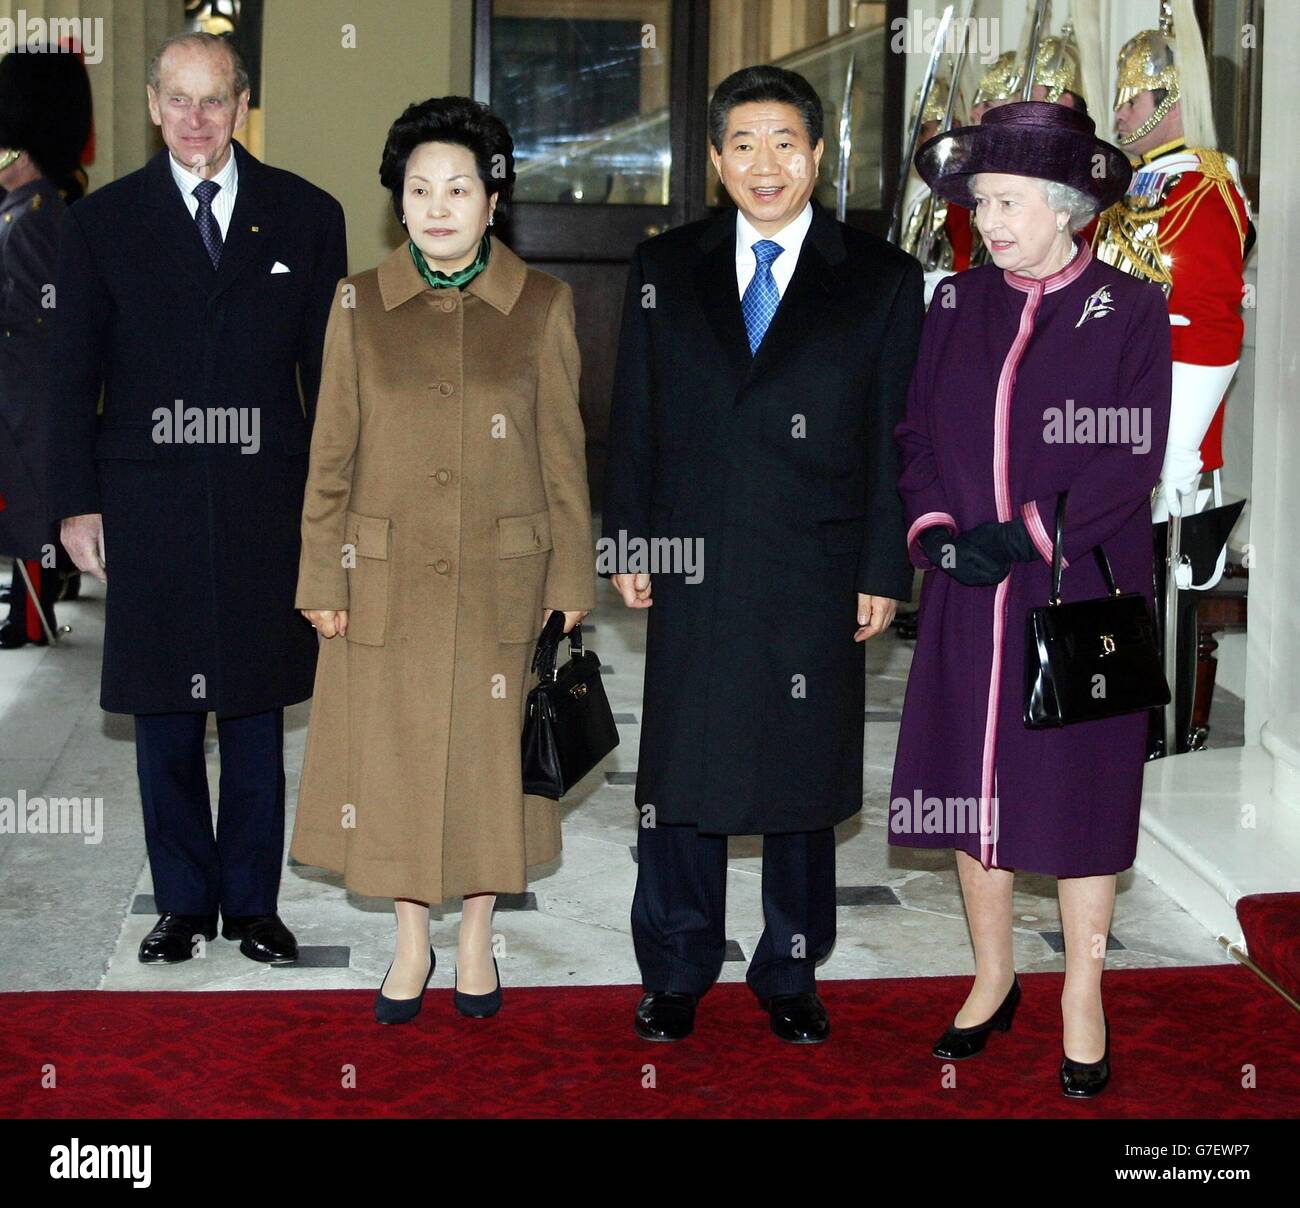 La Regina Elisabetta II (a destra) e il Duca di Edimburgo il Principe Filippo (a sinistra) si trovano accanto al presidente sudcoreano Roh Moo-Hyun (al centro) e a sua moglie, Kwon Yang-Sookat Buckingham Palace, Londra, durante la sua visita di stato in Gran Bretagna. Foto Stock